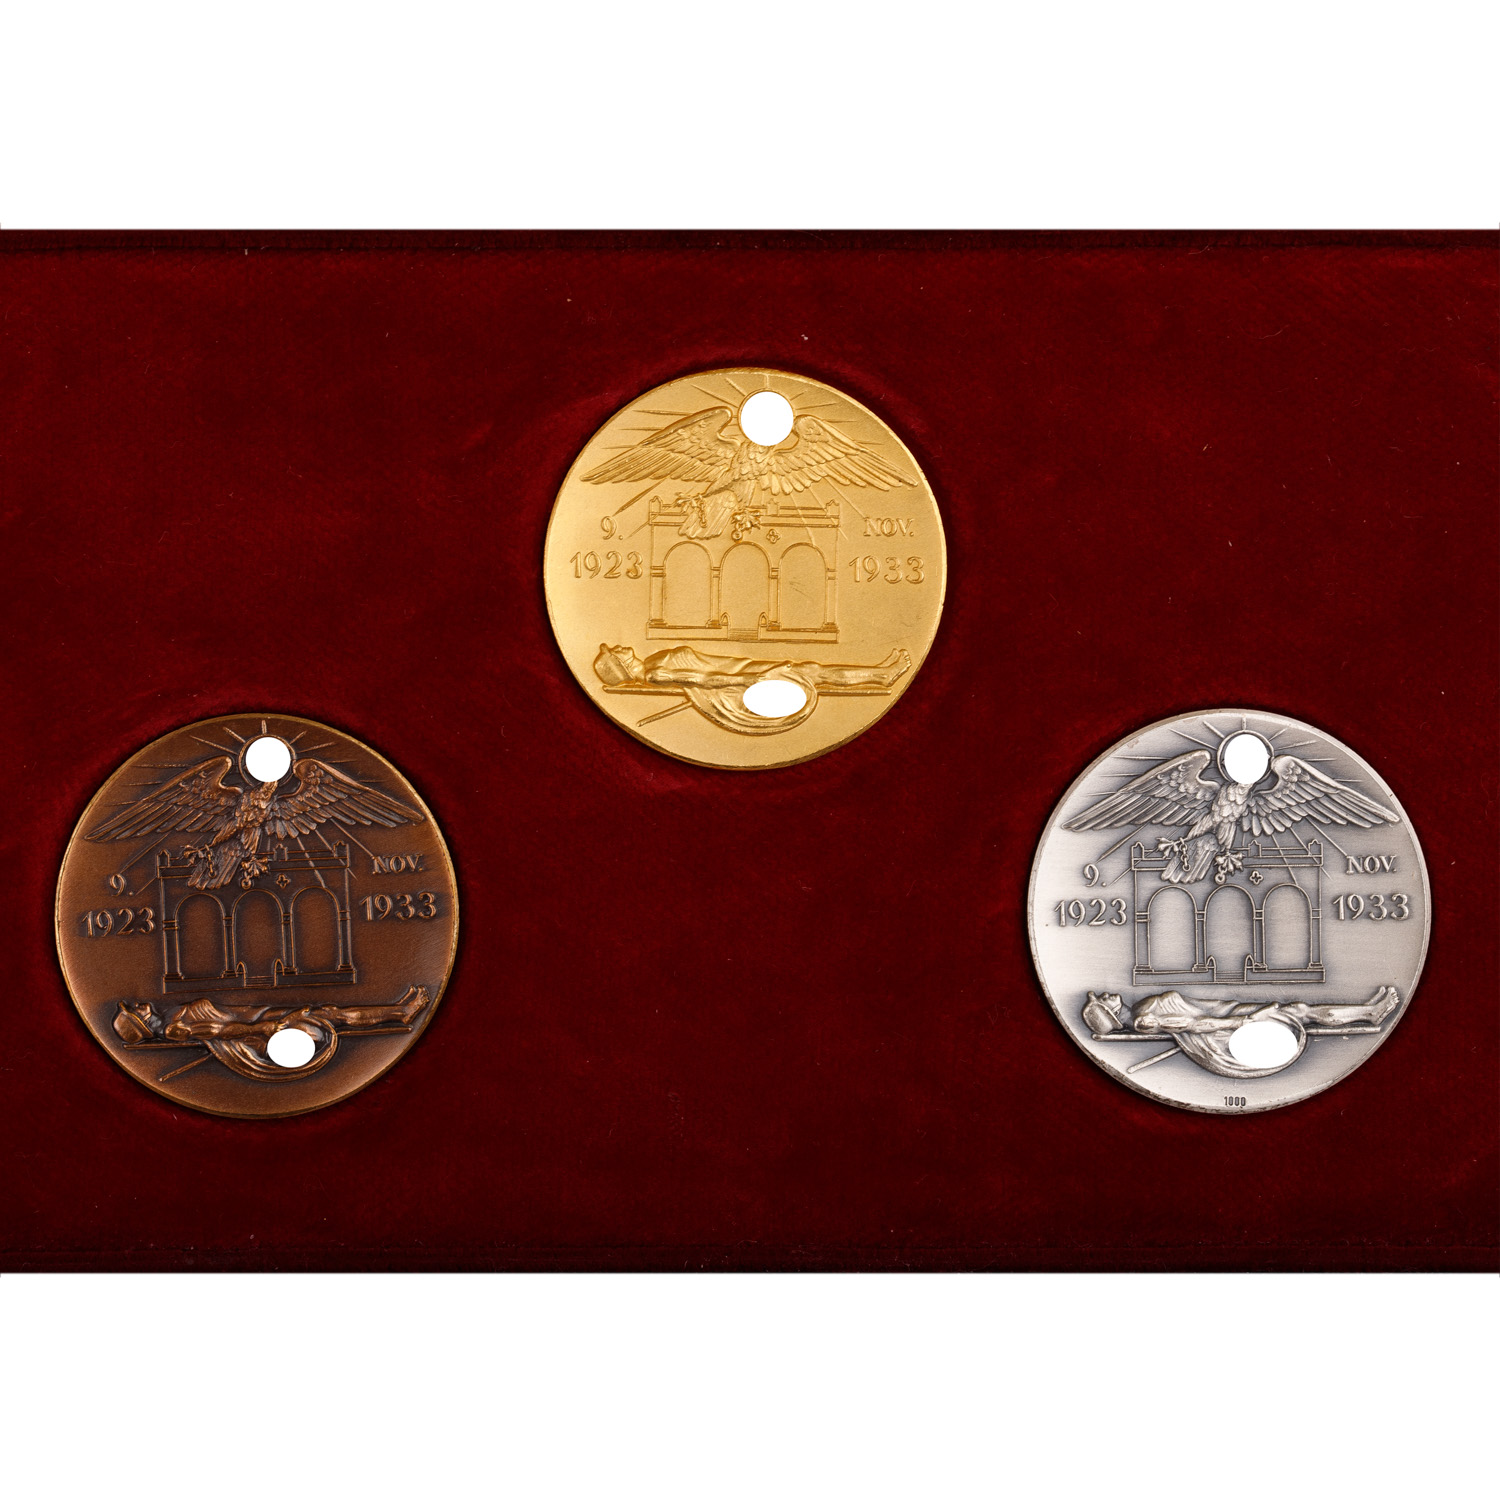 Deutsches Reich 1933-1945 - Extrem selten als Set angebotene Medaillen-Trilogie in GOLD (999), SILBE - Image 3 of 6